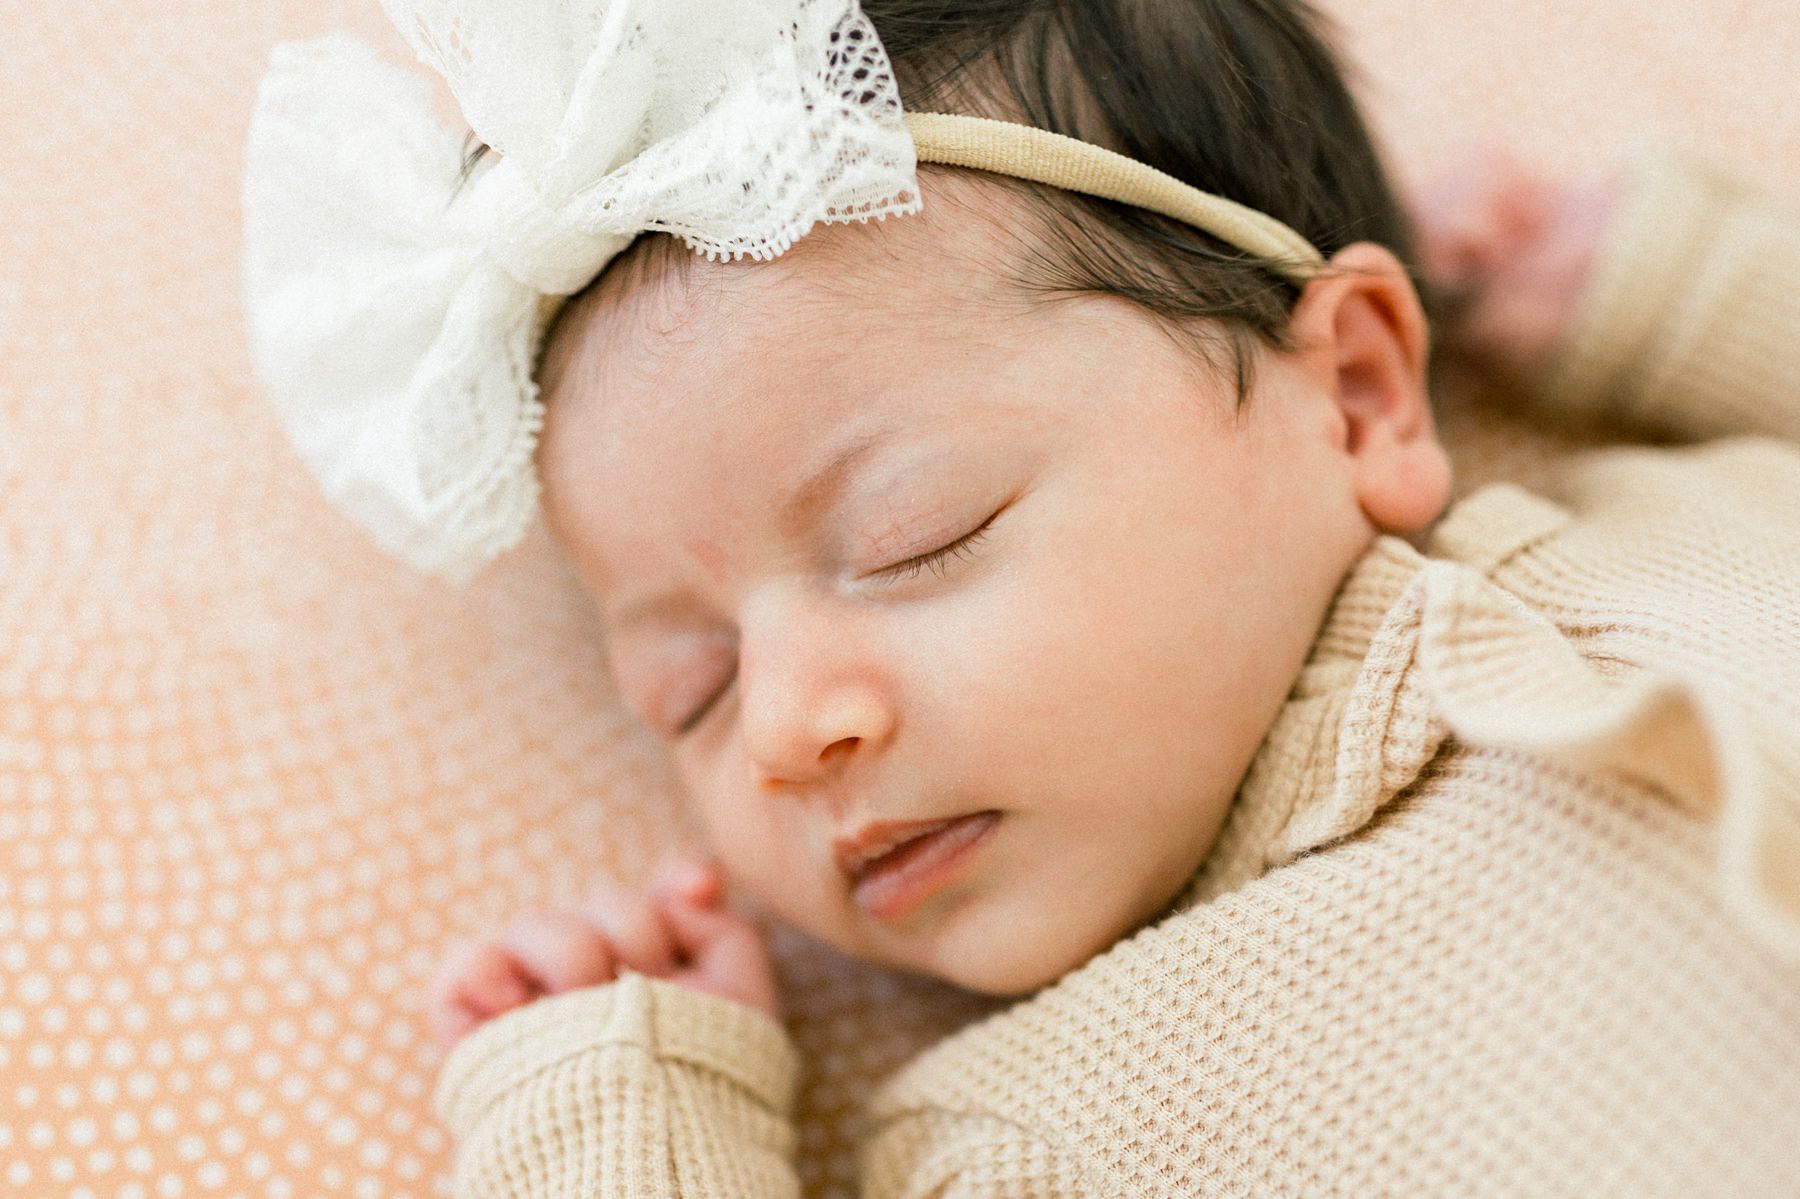 Lifestyle Newborn Photos in the crib with a soft peach neutral crib sheet